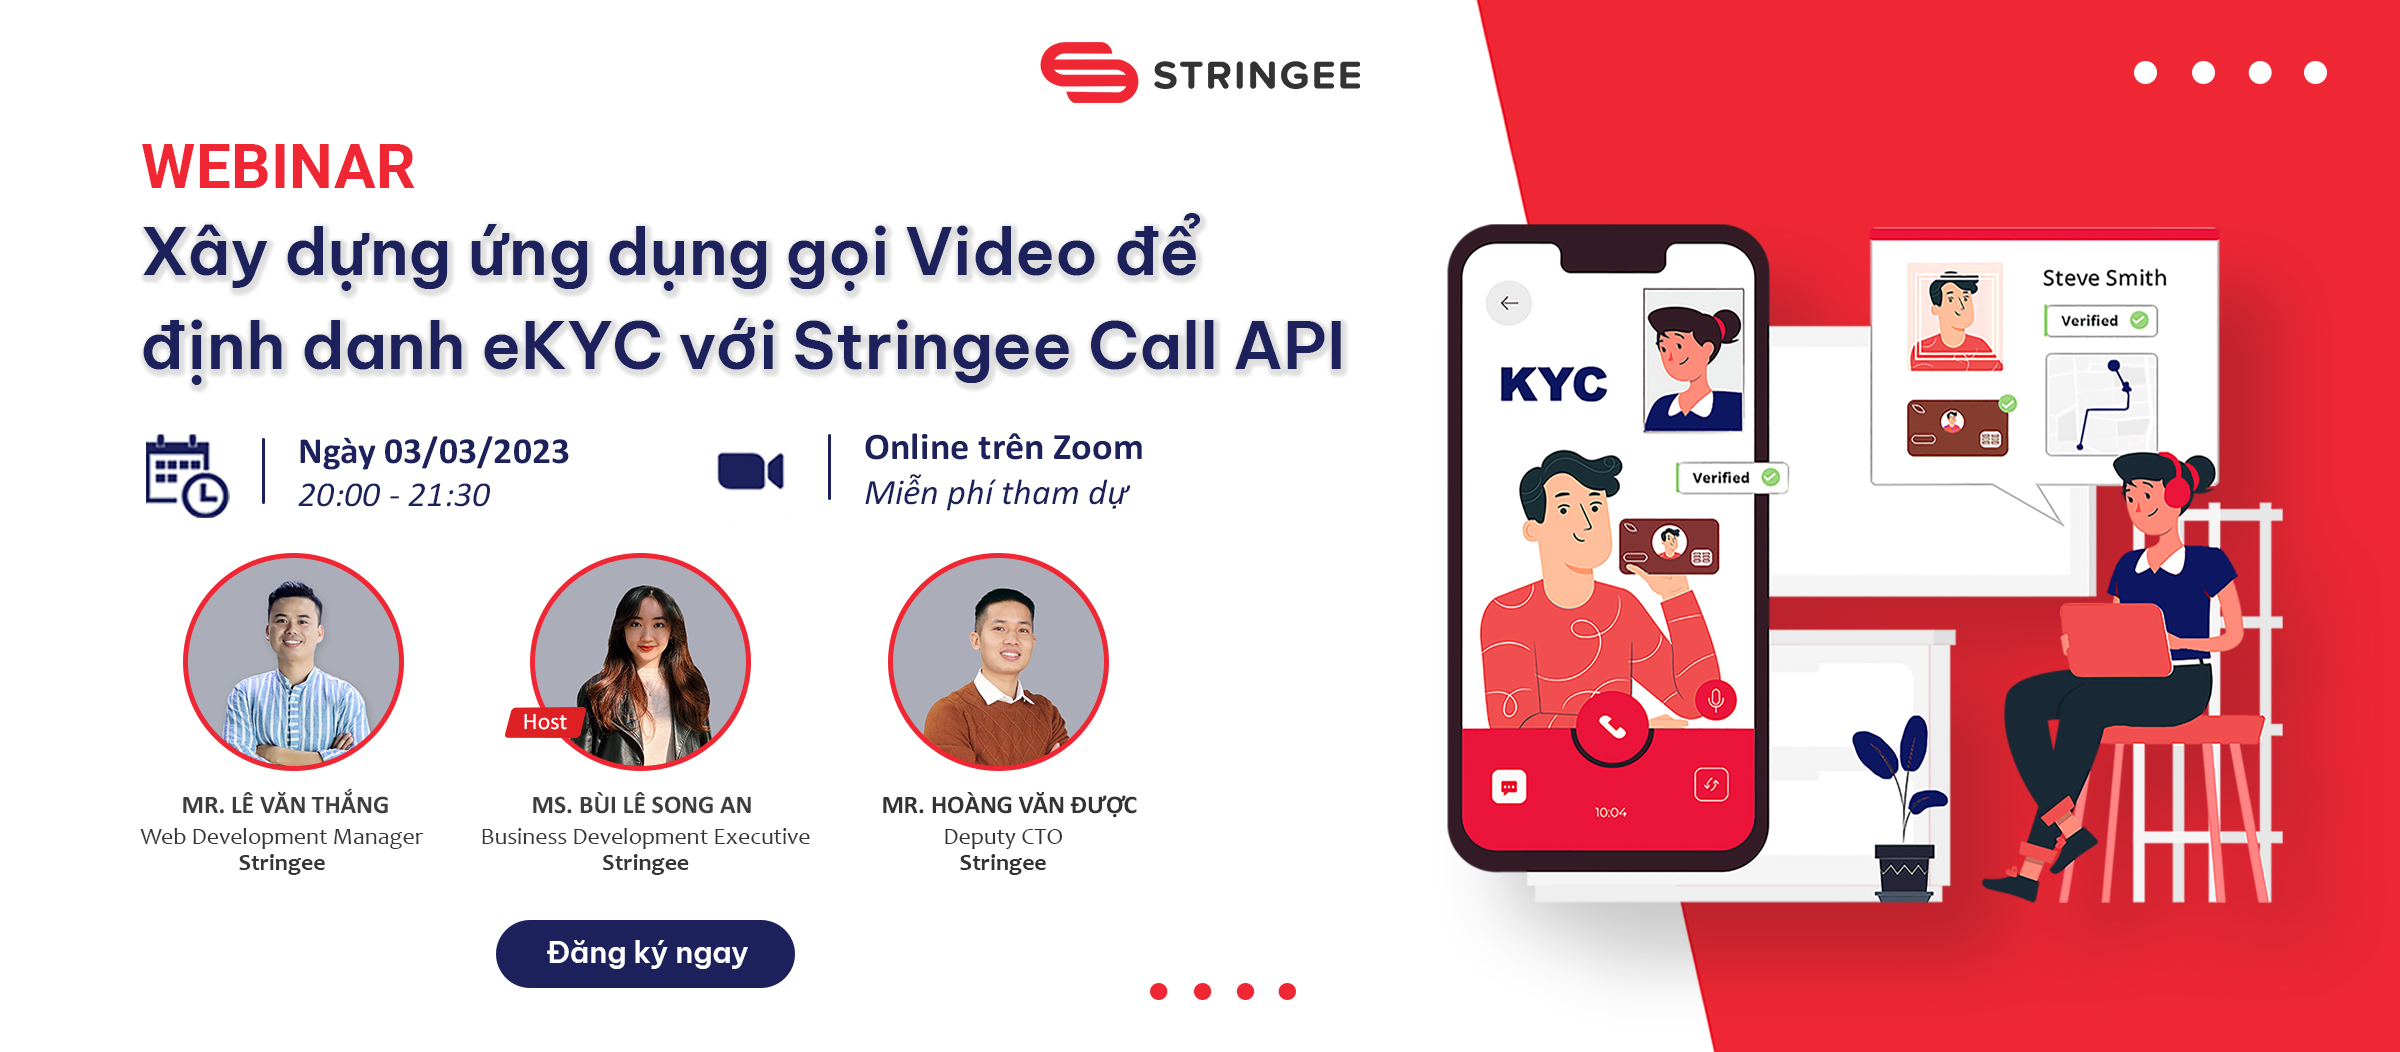 [Webinar]  Xây dựng ứng dụng gọi Video để định danh eKYC với Stringee Call API